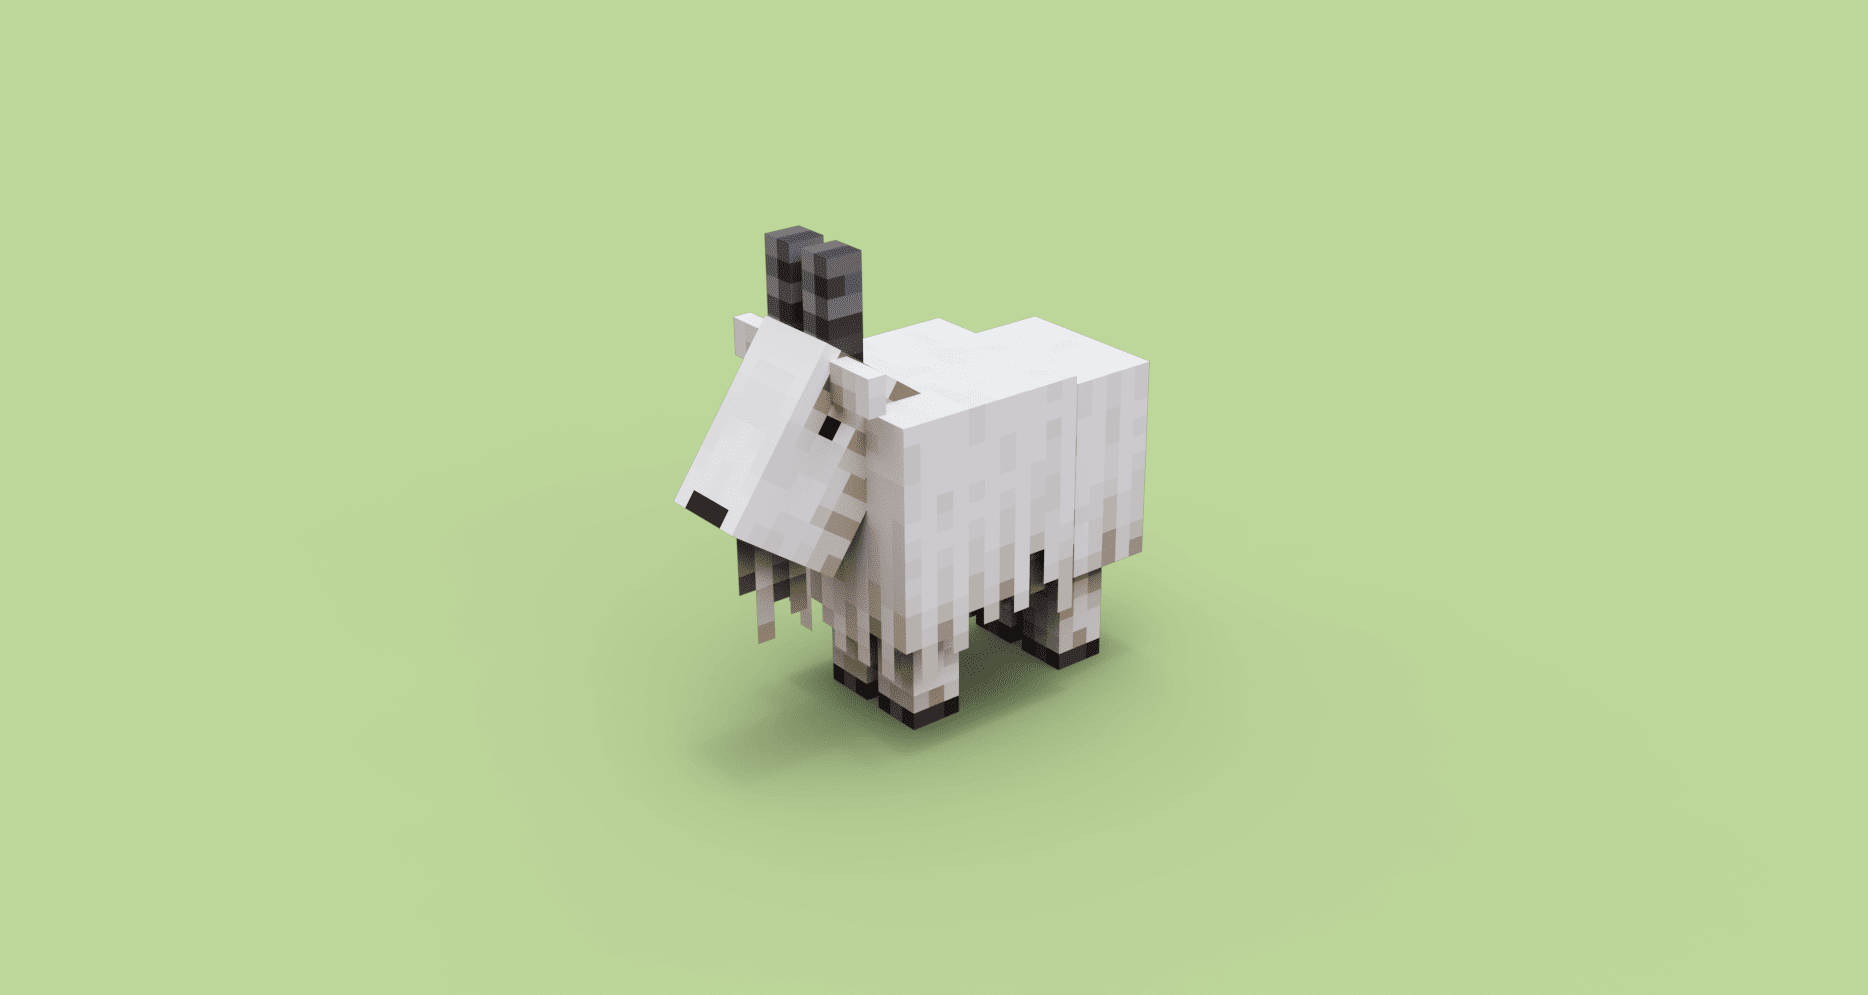 Овца из Майнкрафта, созданная с помощью Blockbench.